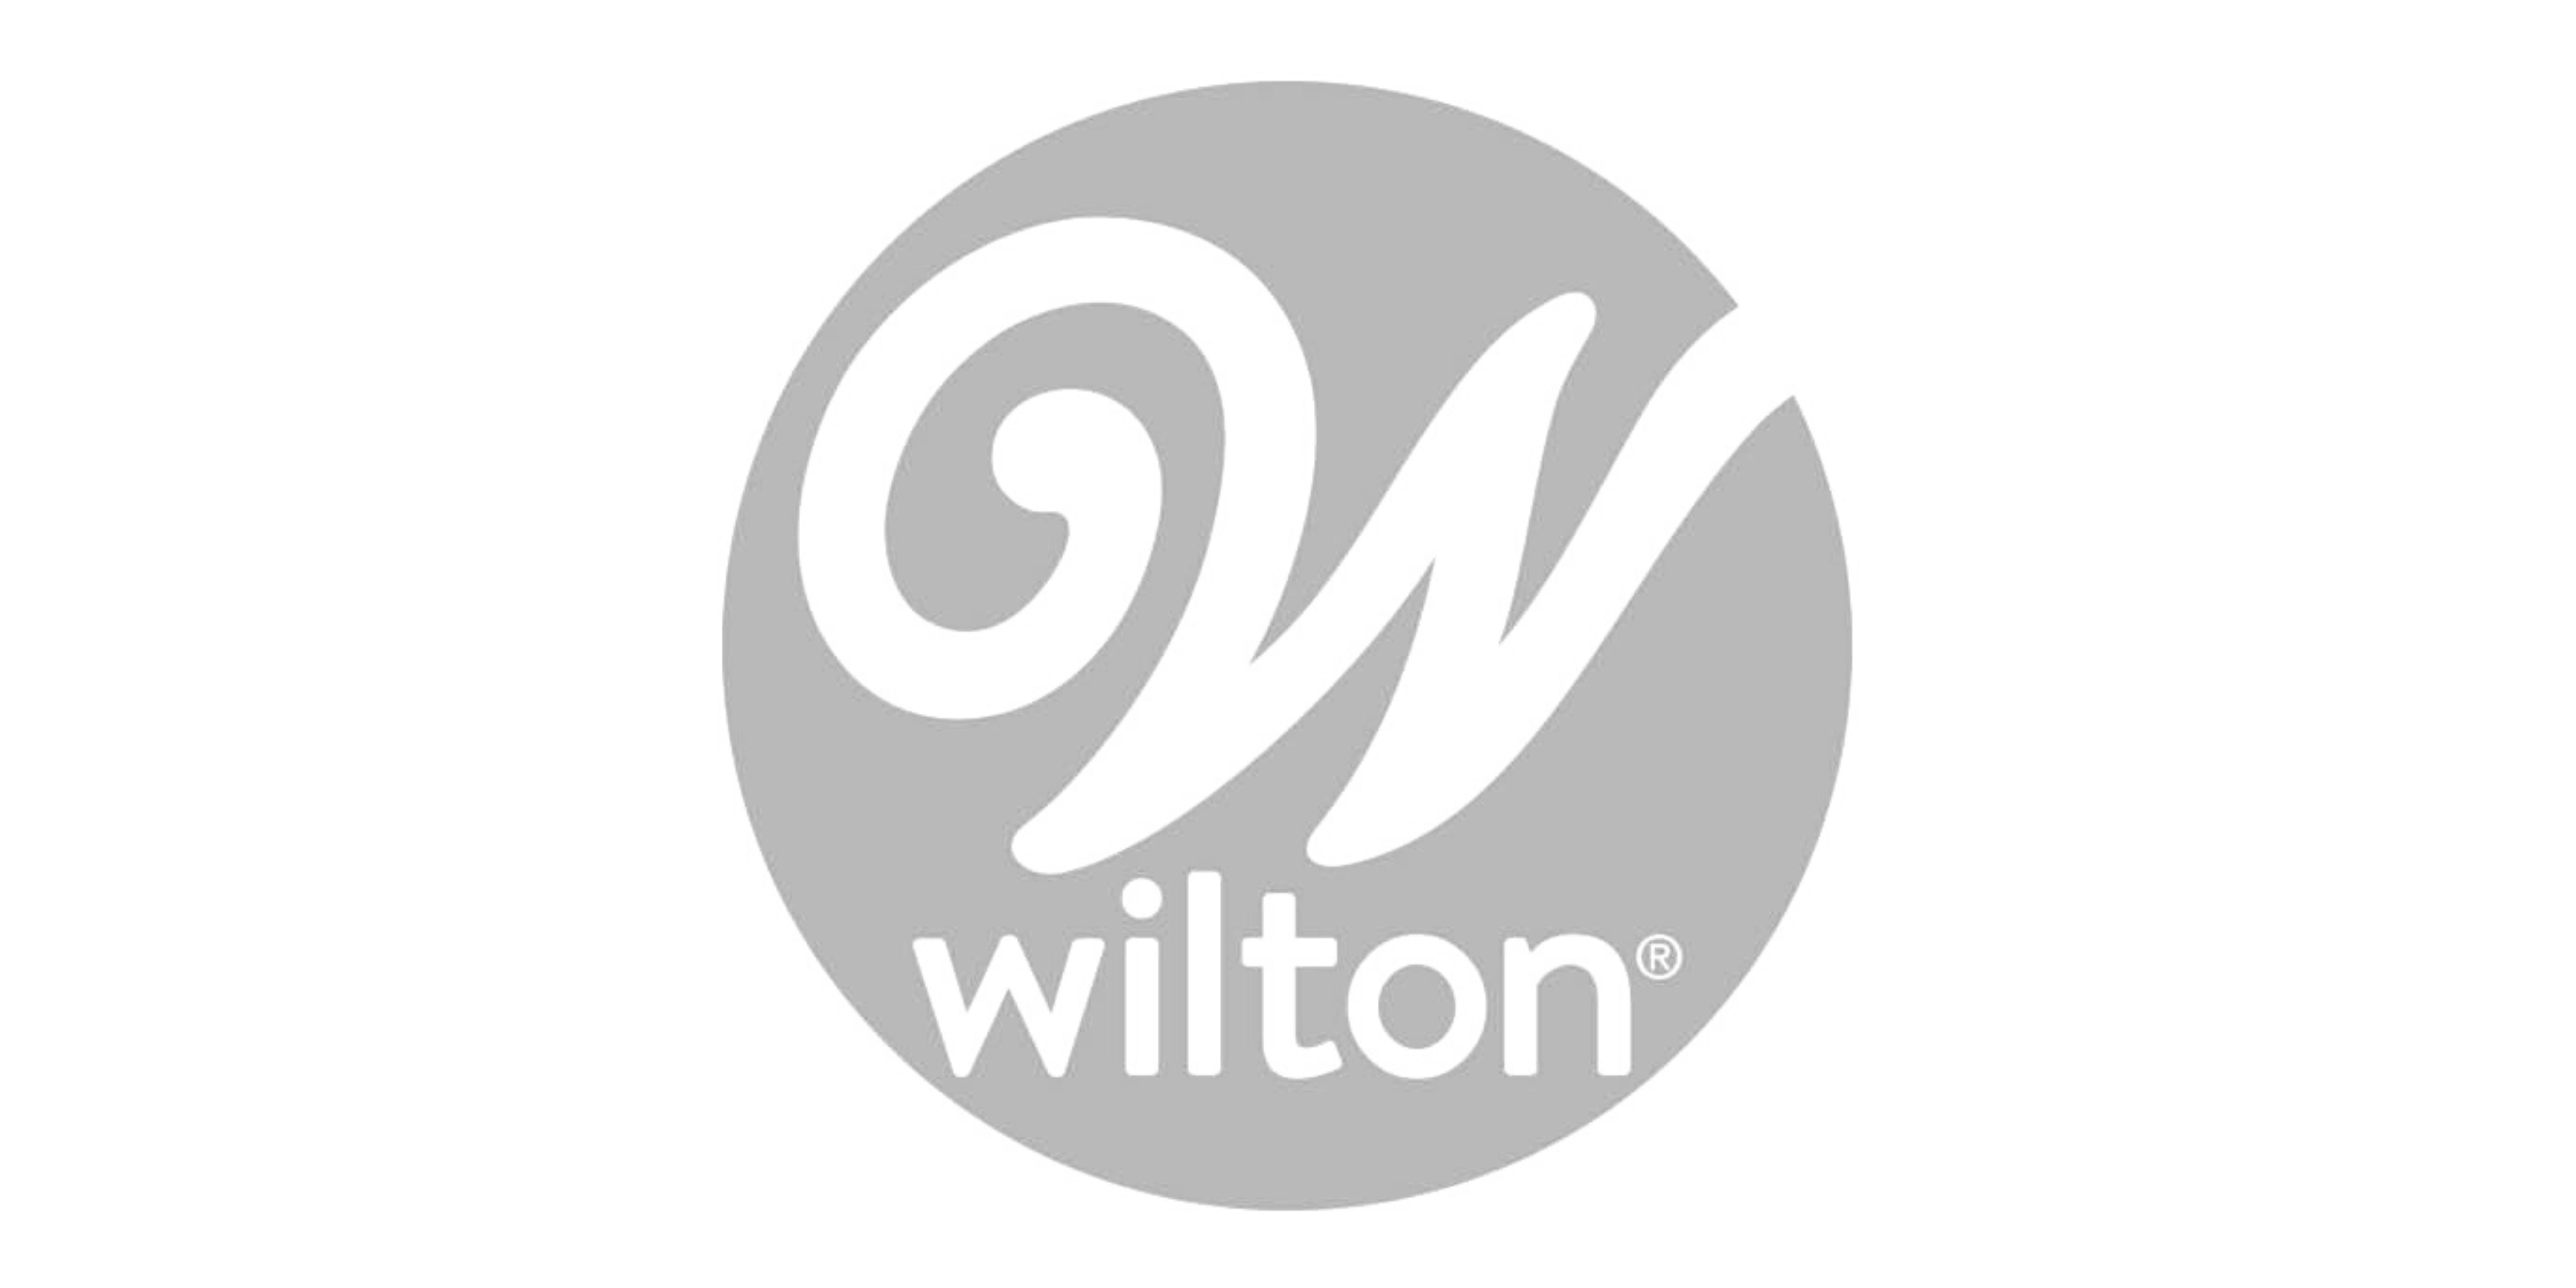 wilton